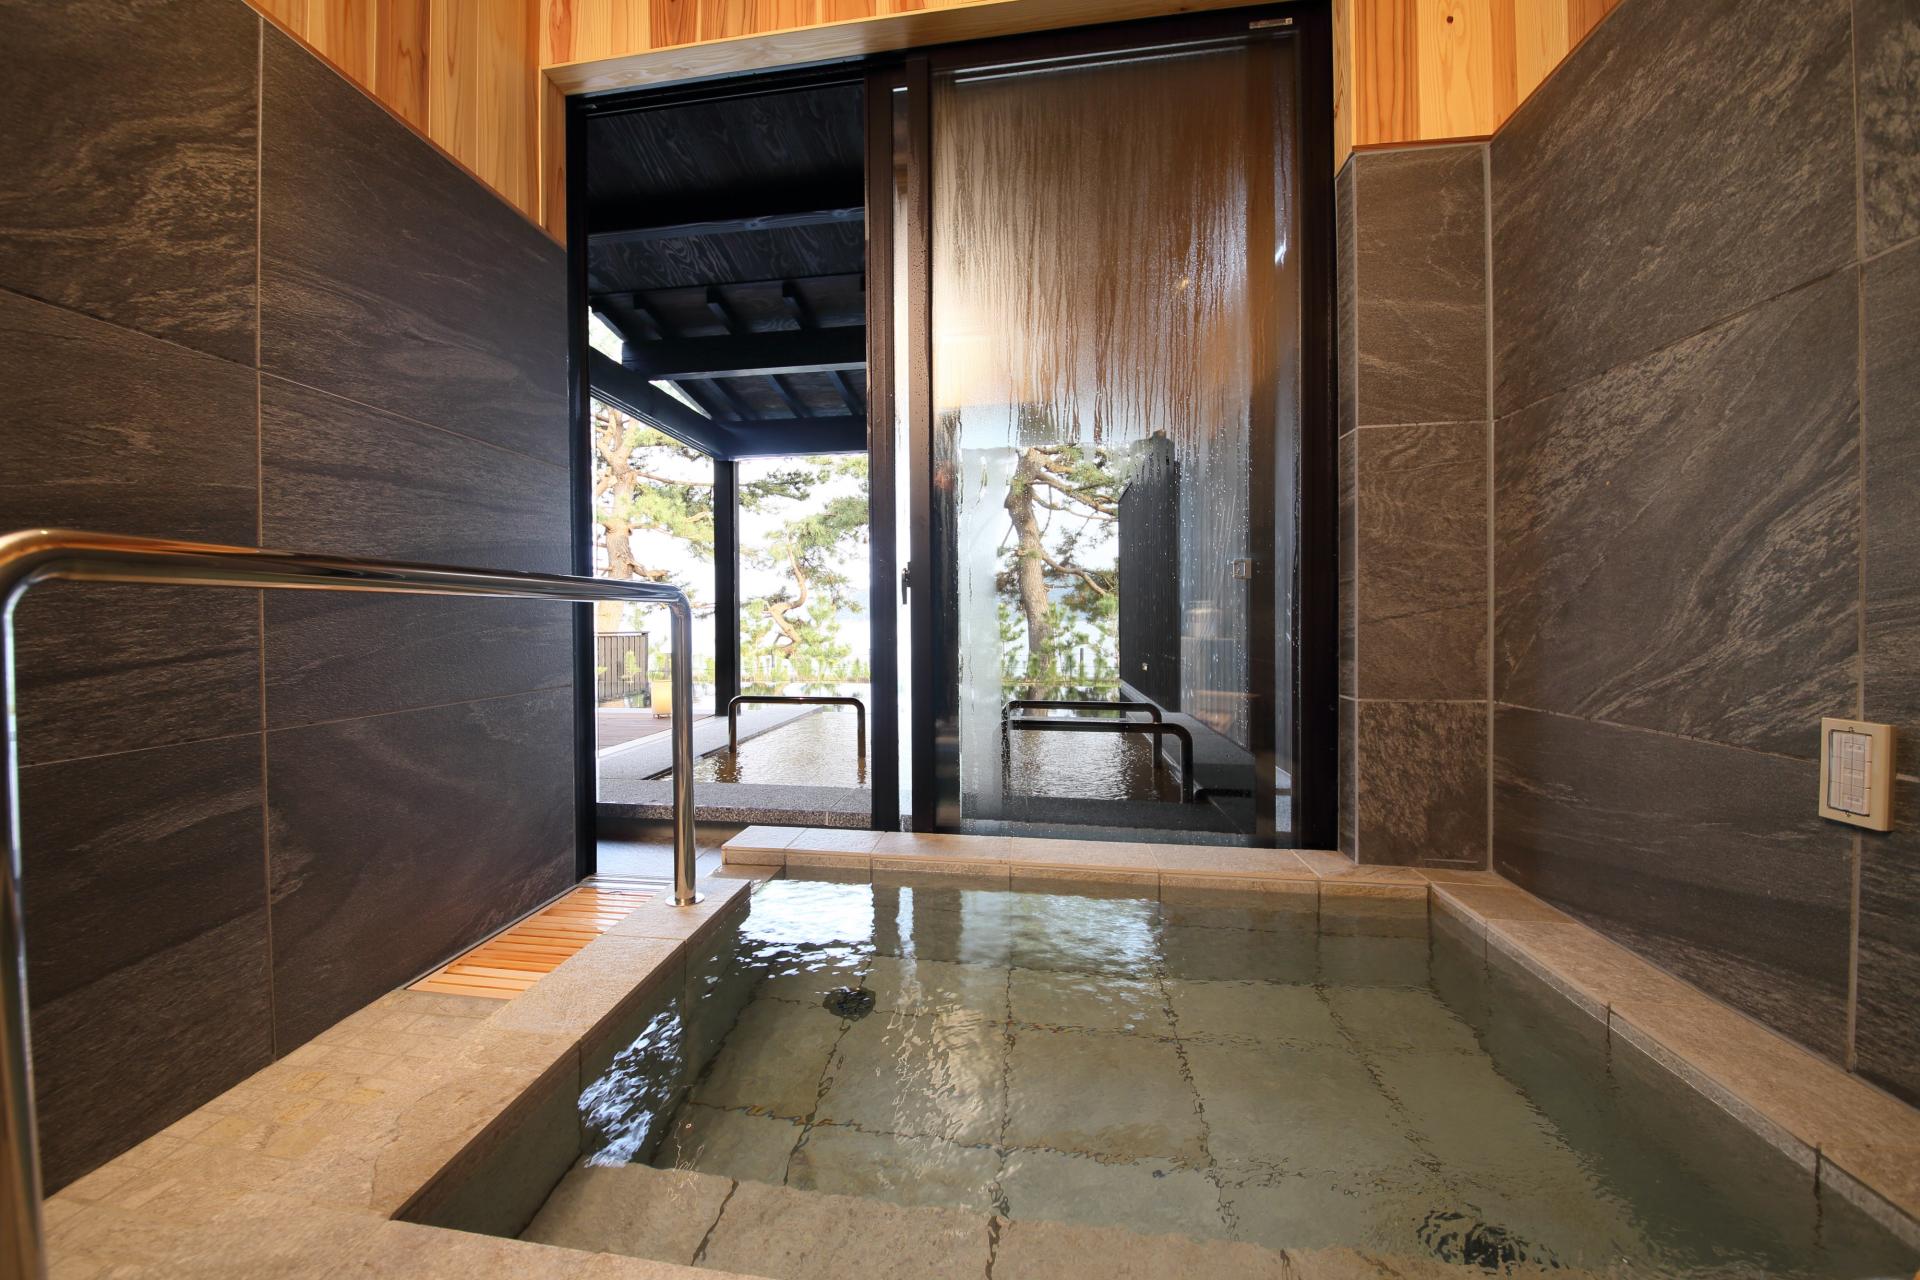 内風呂「銀温泉」は美肌の湯としても人気。